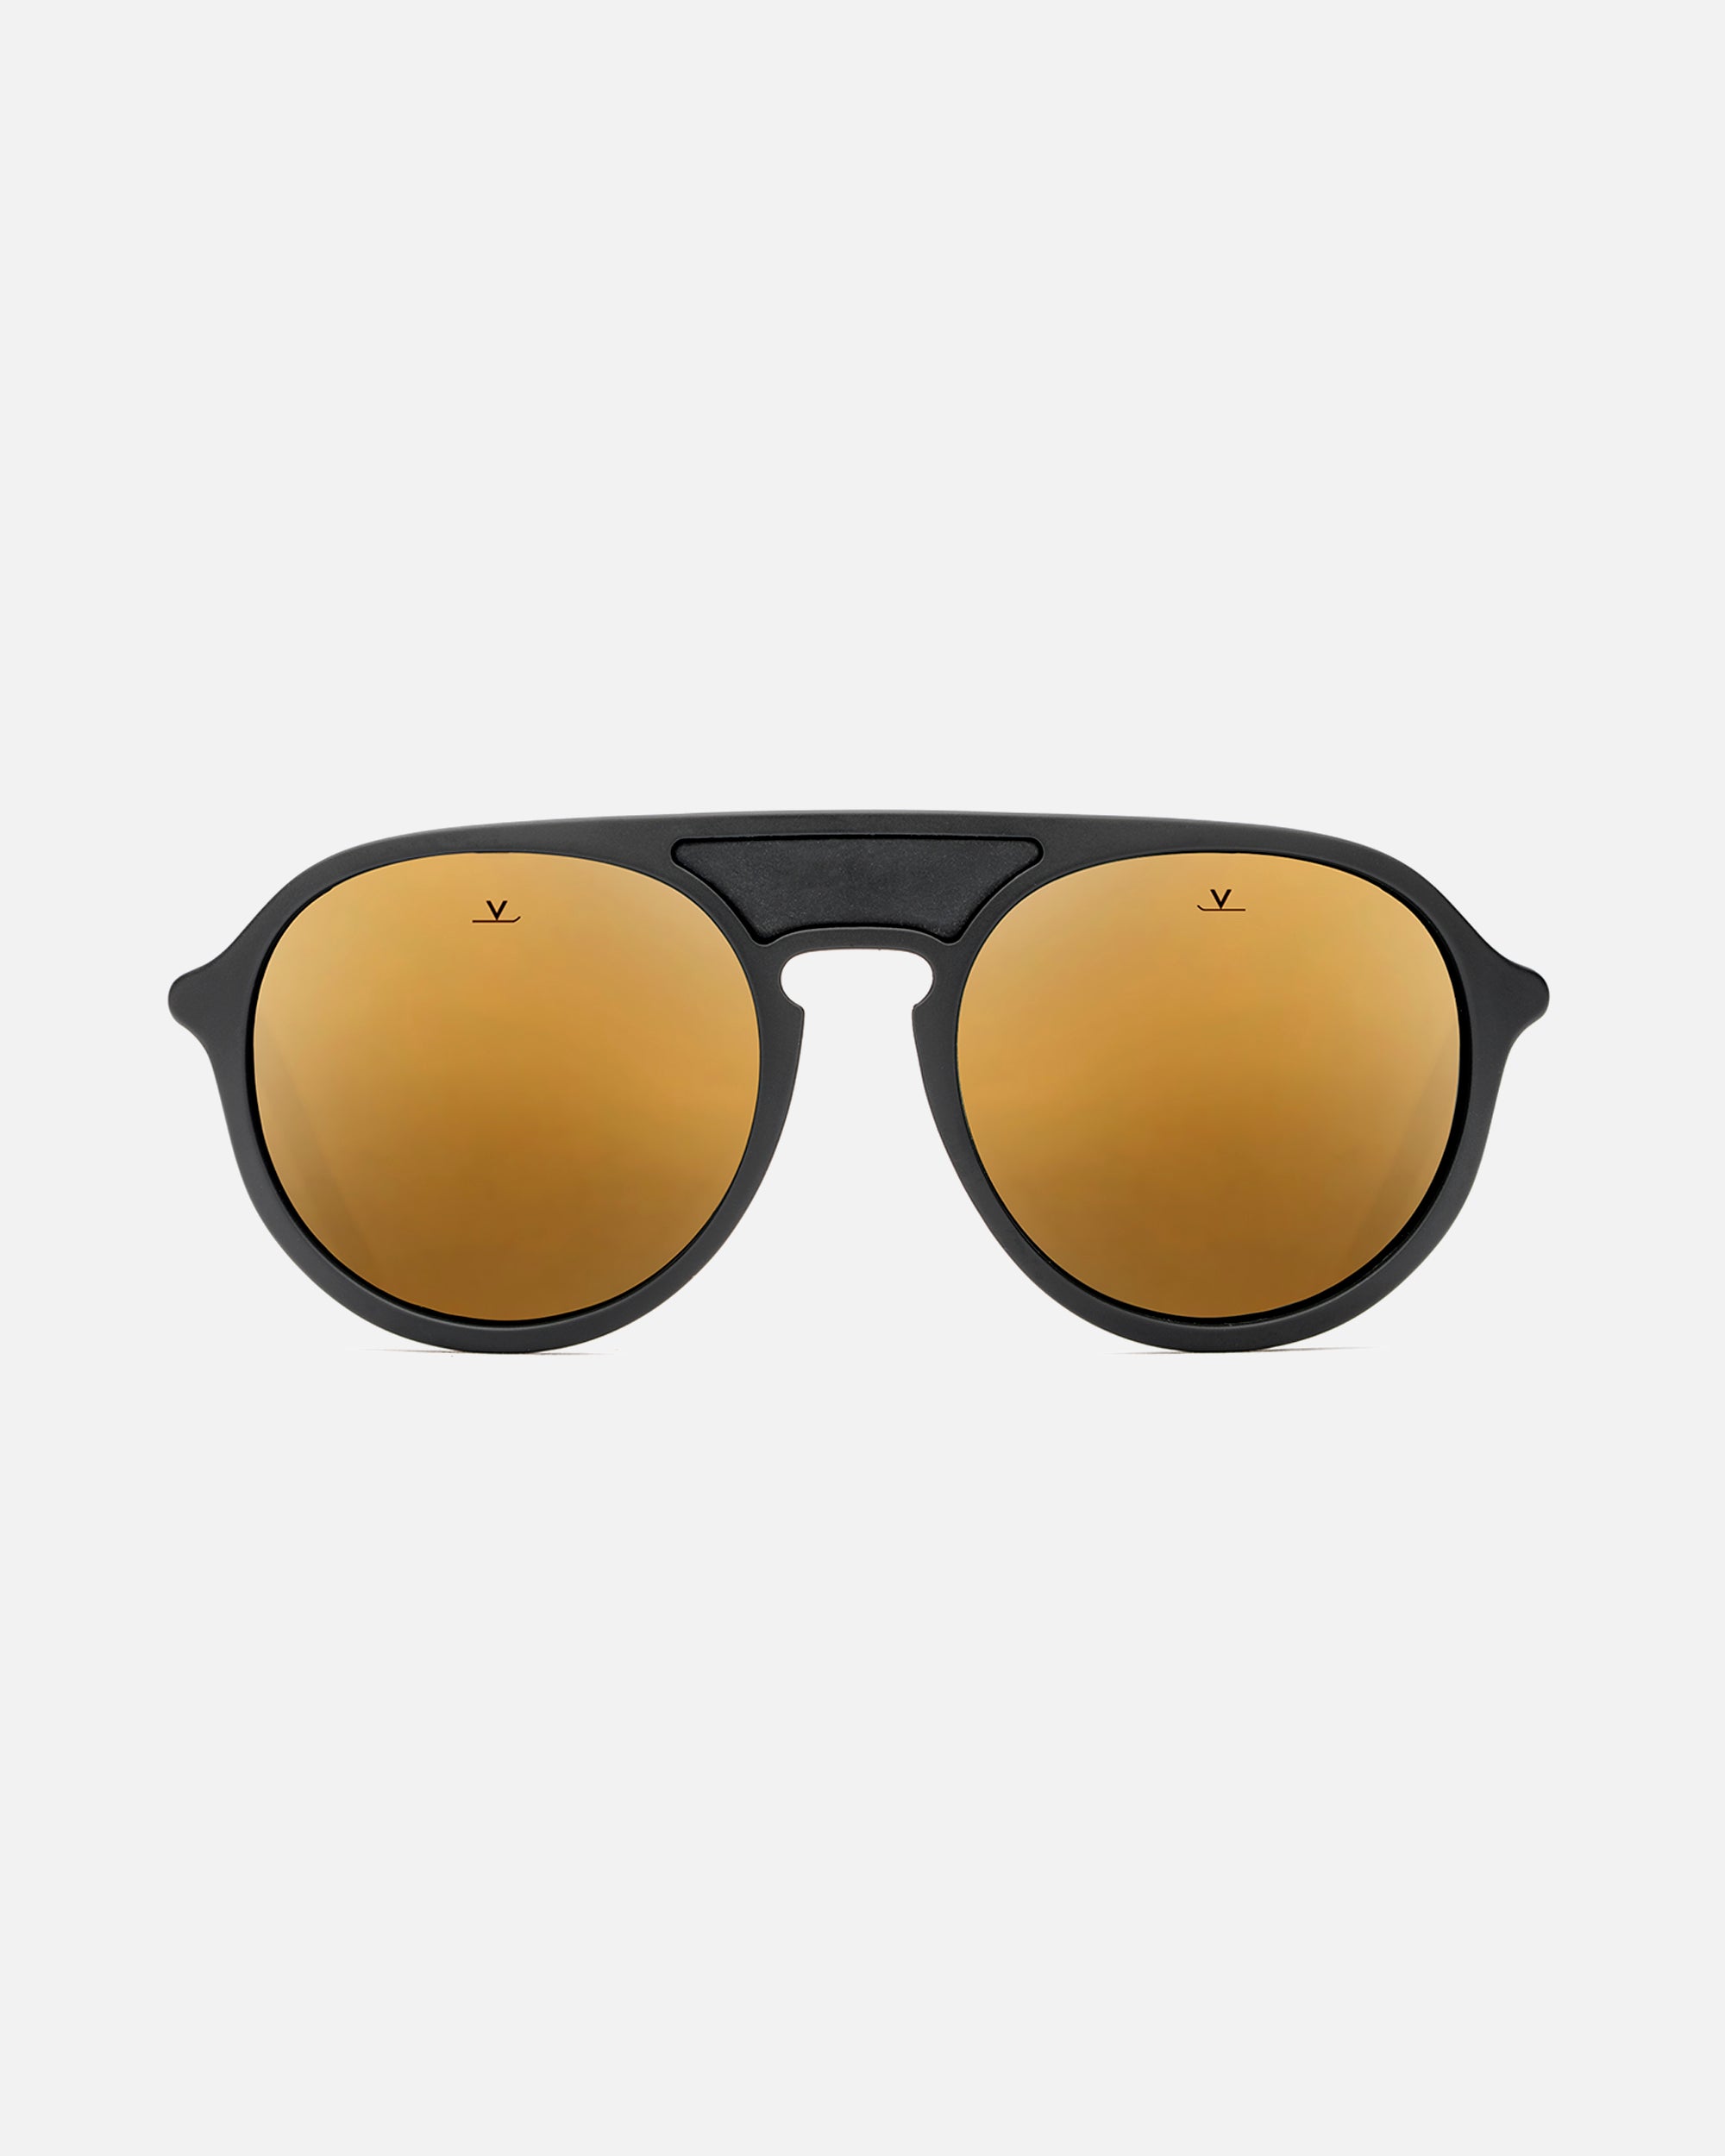 Buy Vuarnet VL1509 Sunglasses Online in India - Etsy